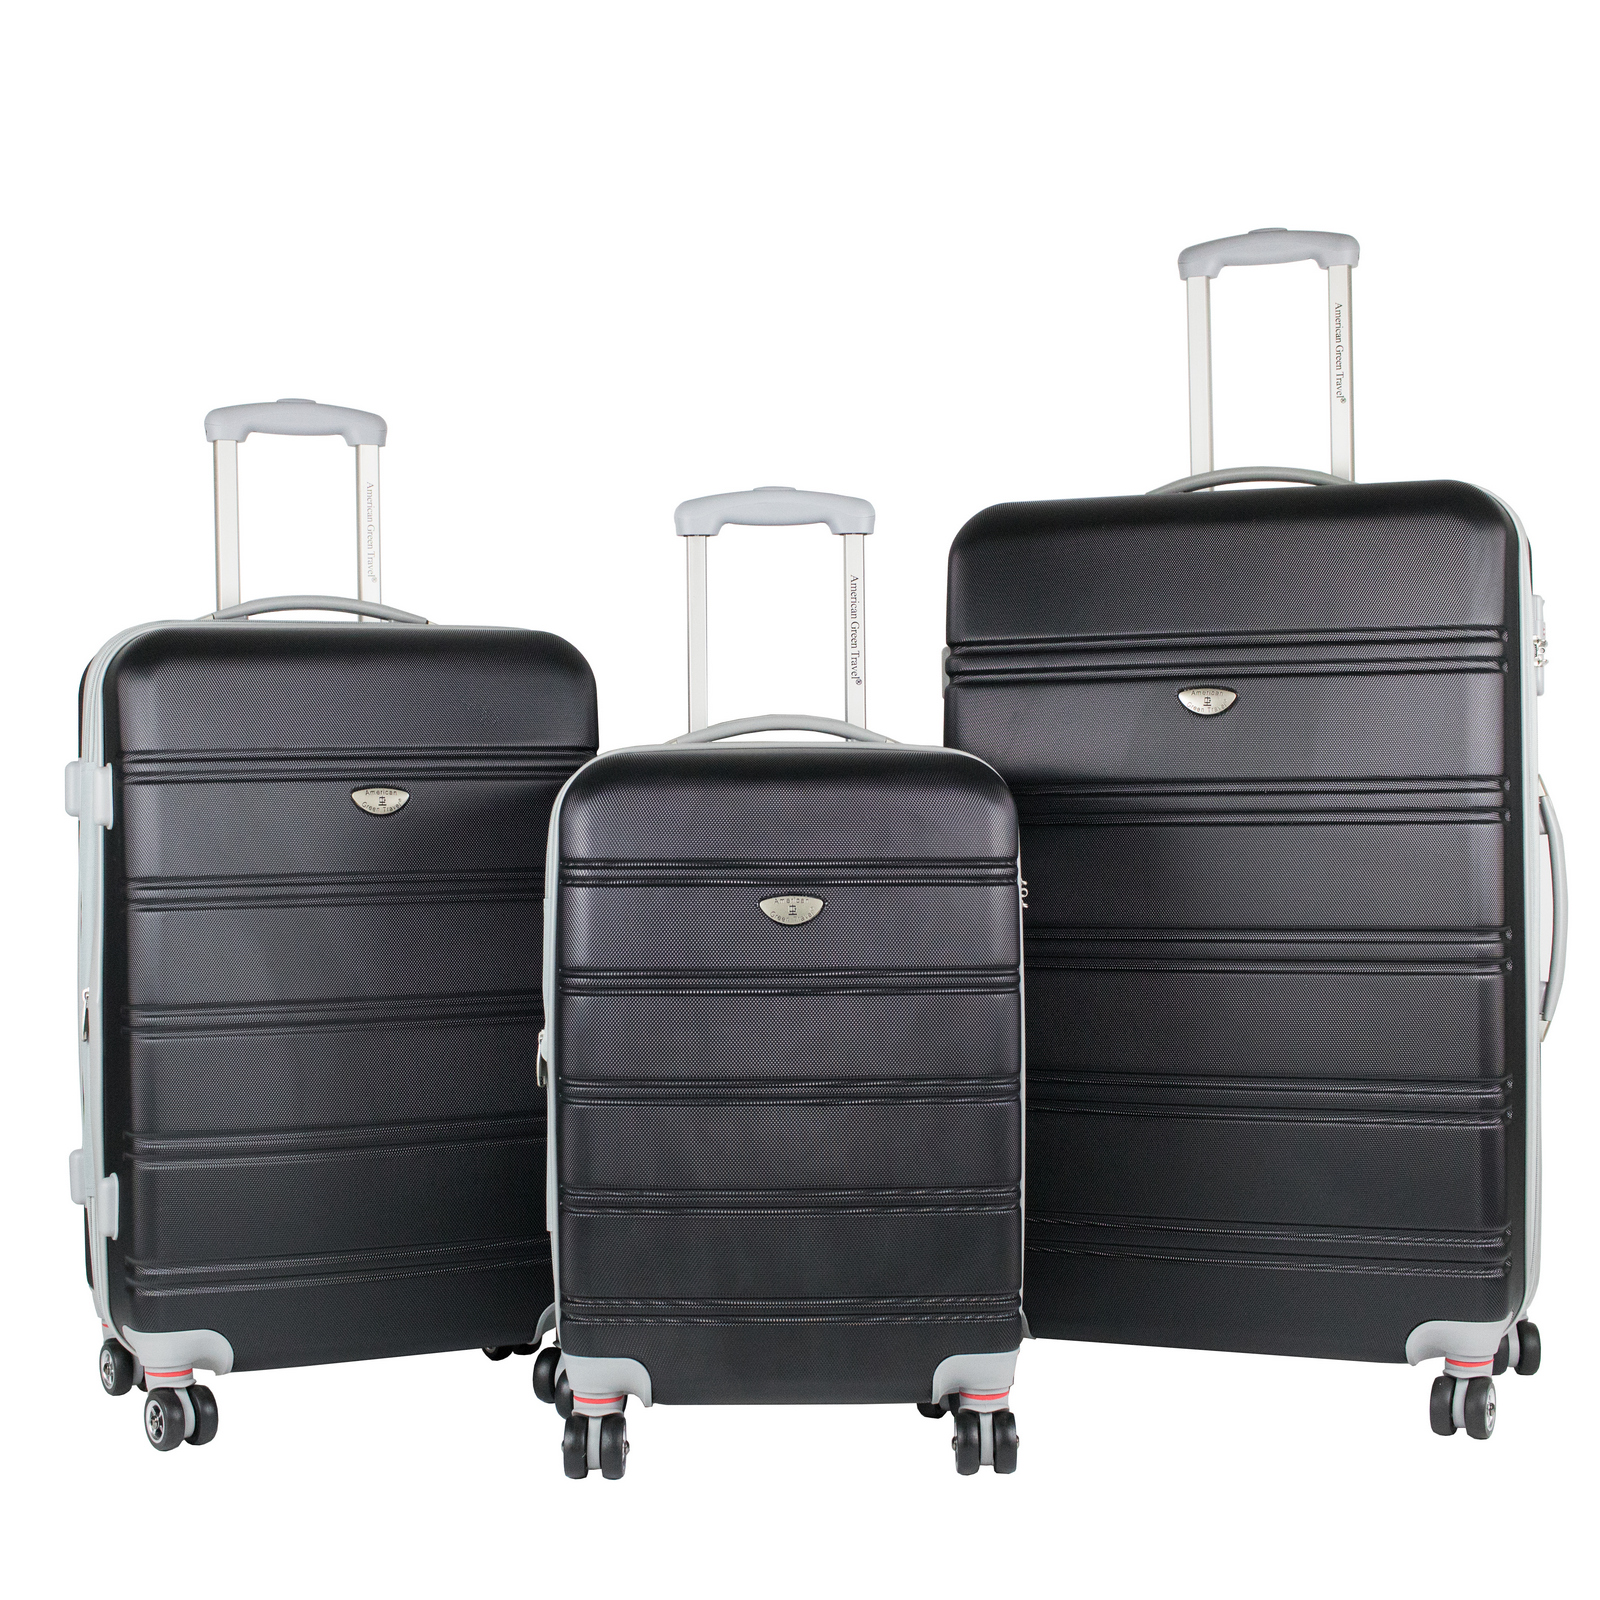 Lg2020-black Expandable Hardside Spinner Luggage Set With Tsa Locks, Black - 3 Piece